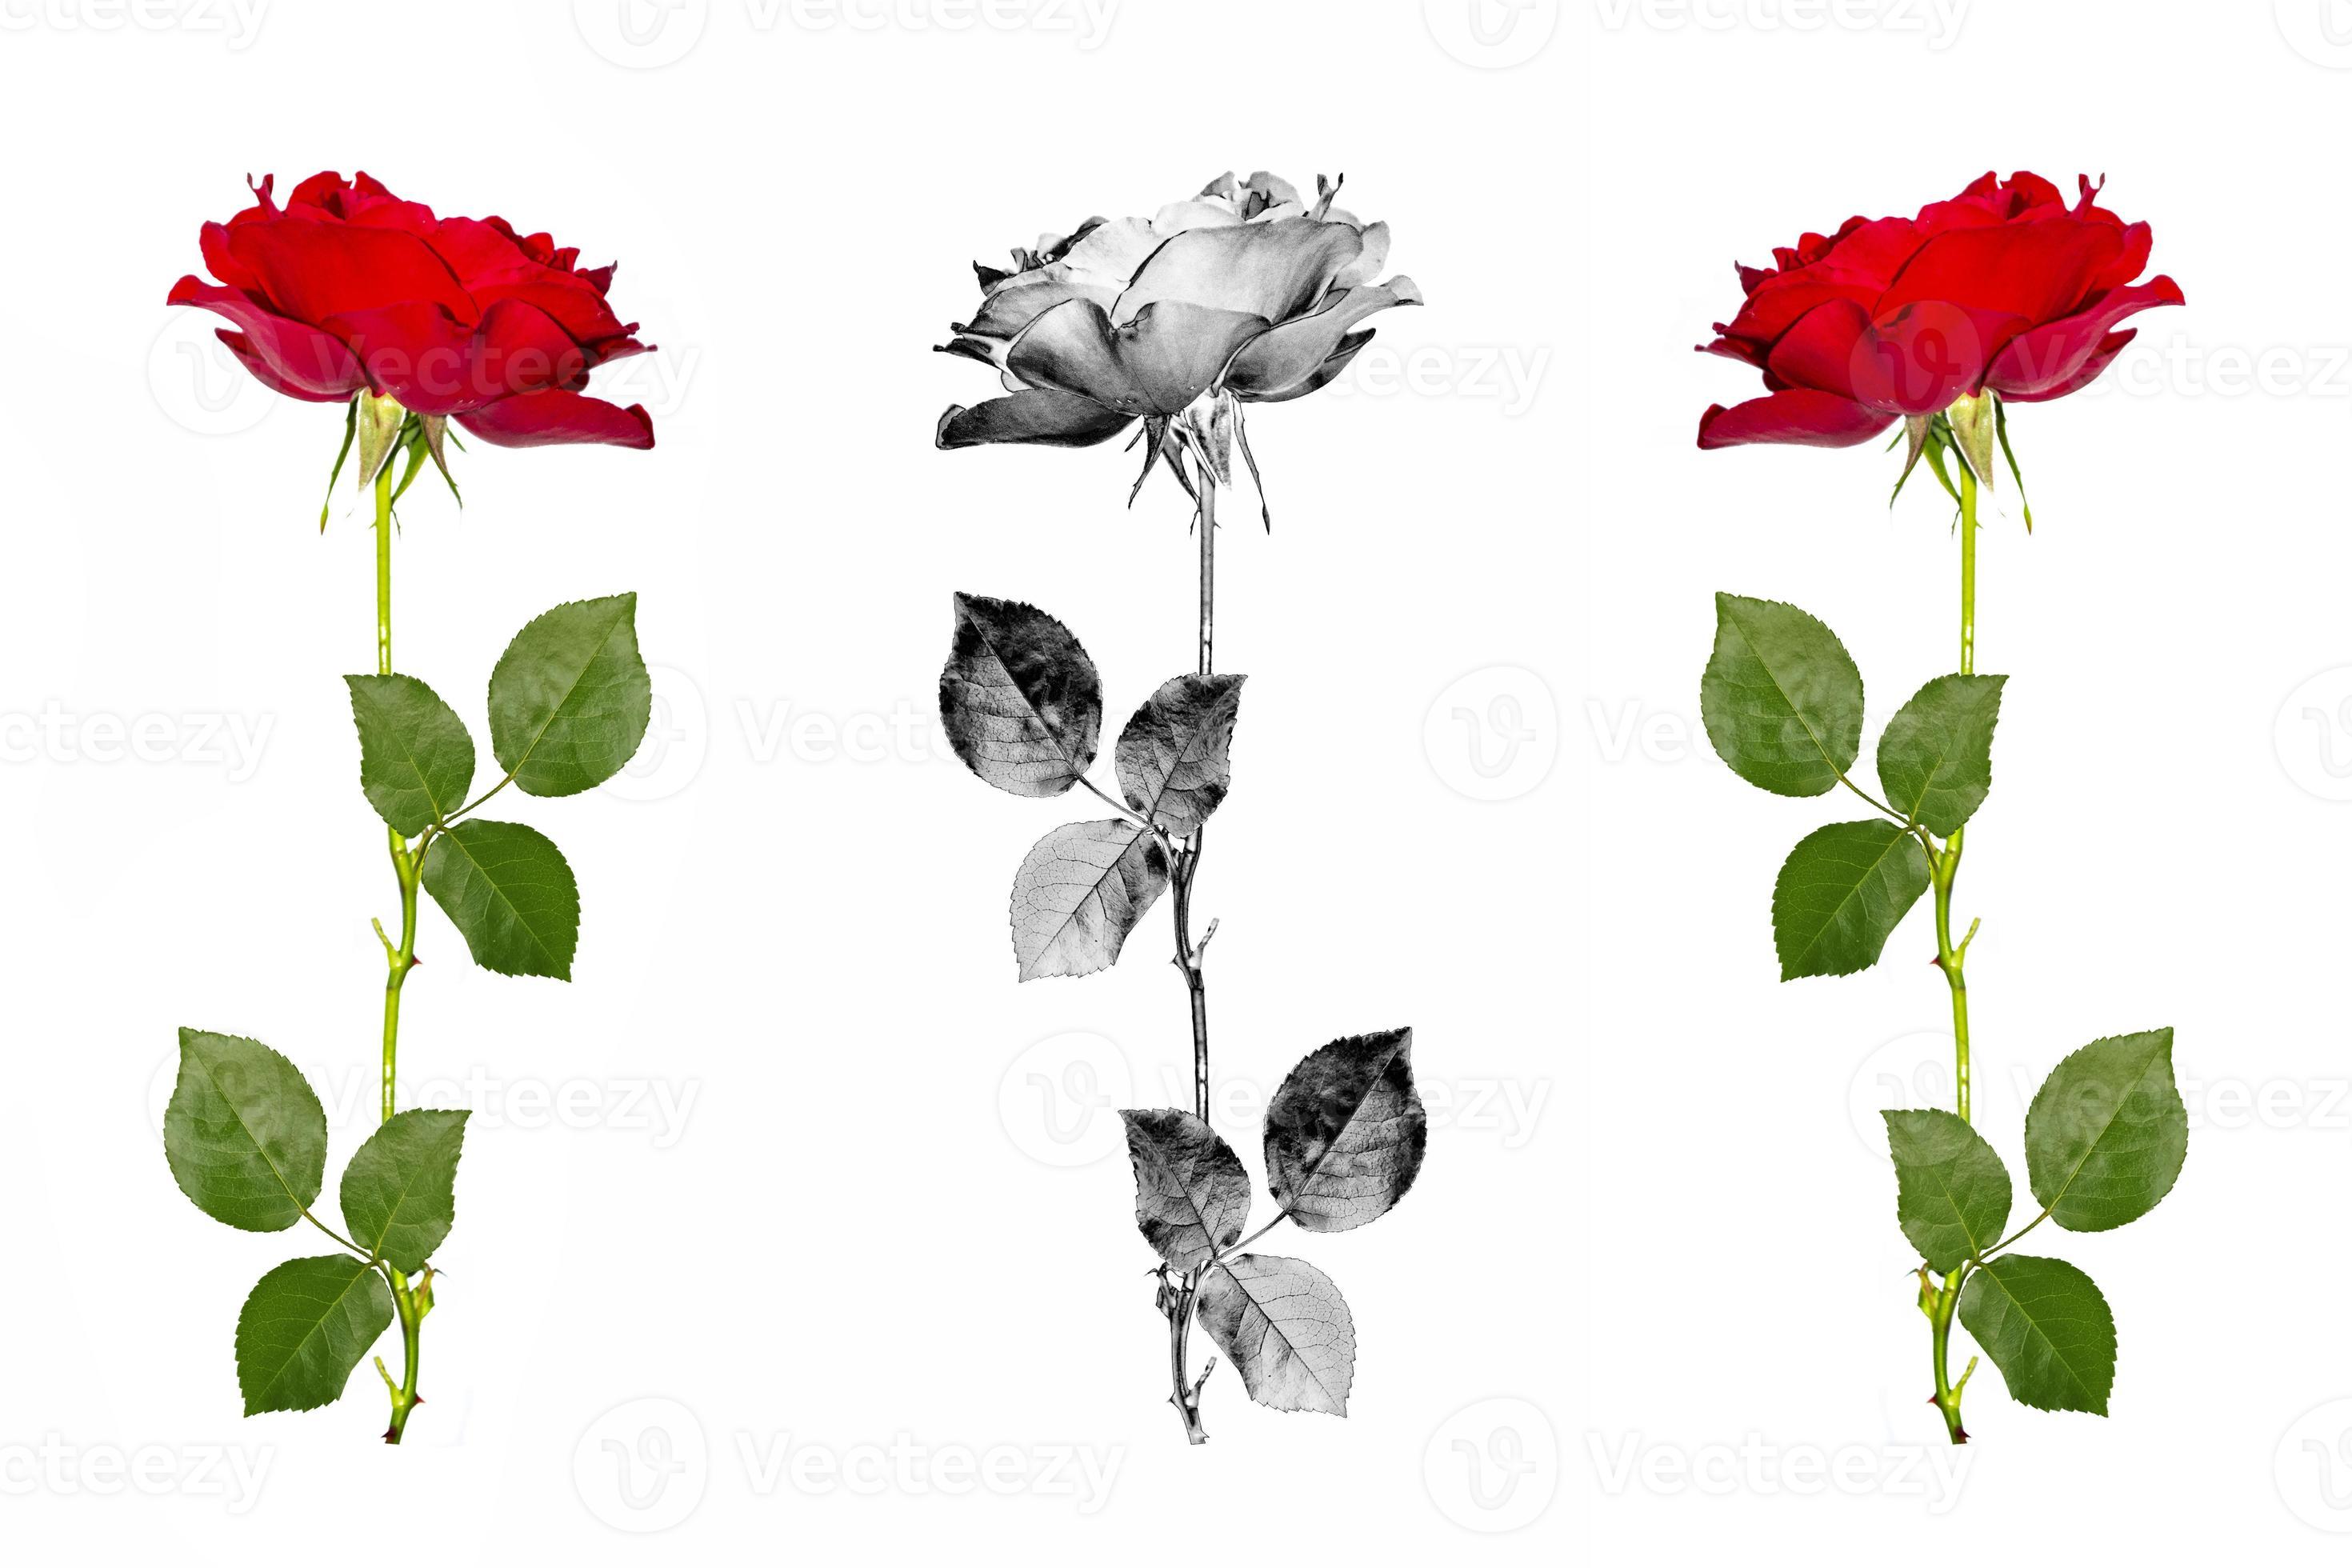 cinq roses rouges sur fond blanc. fond floral 9894920 Banque de photos